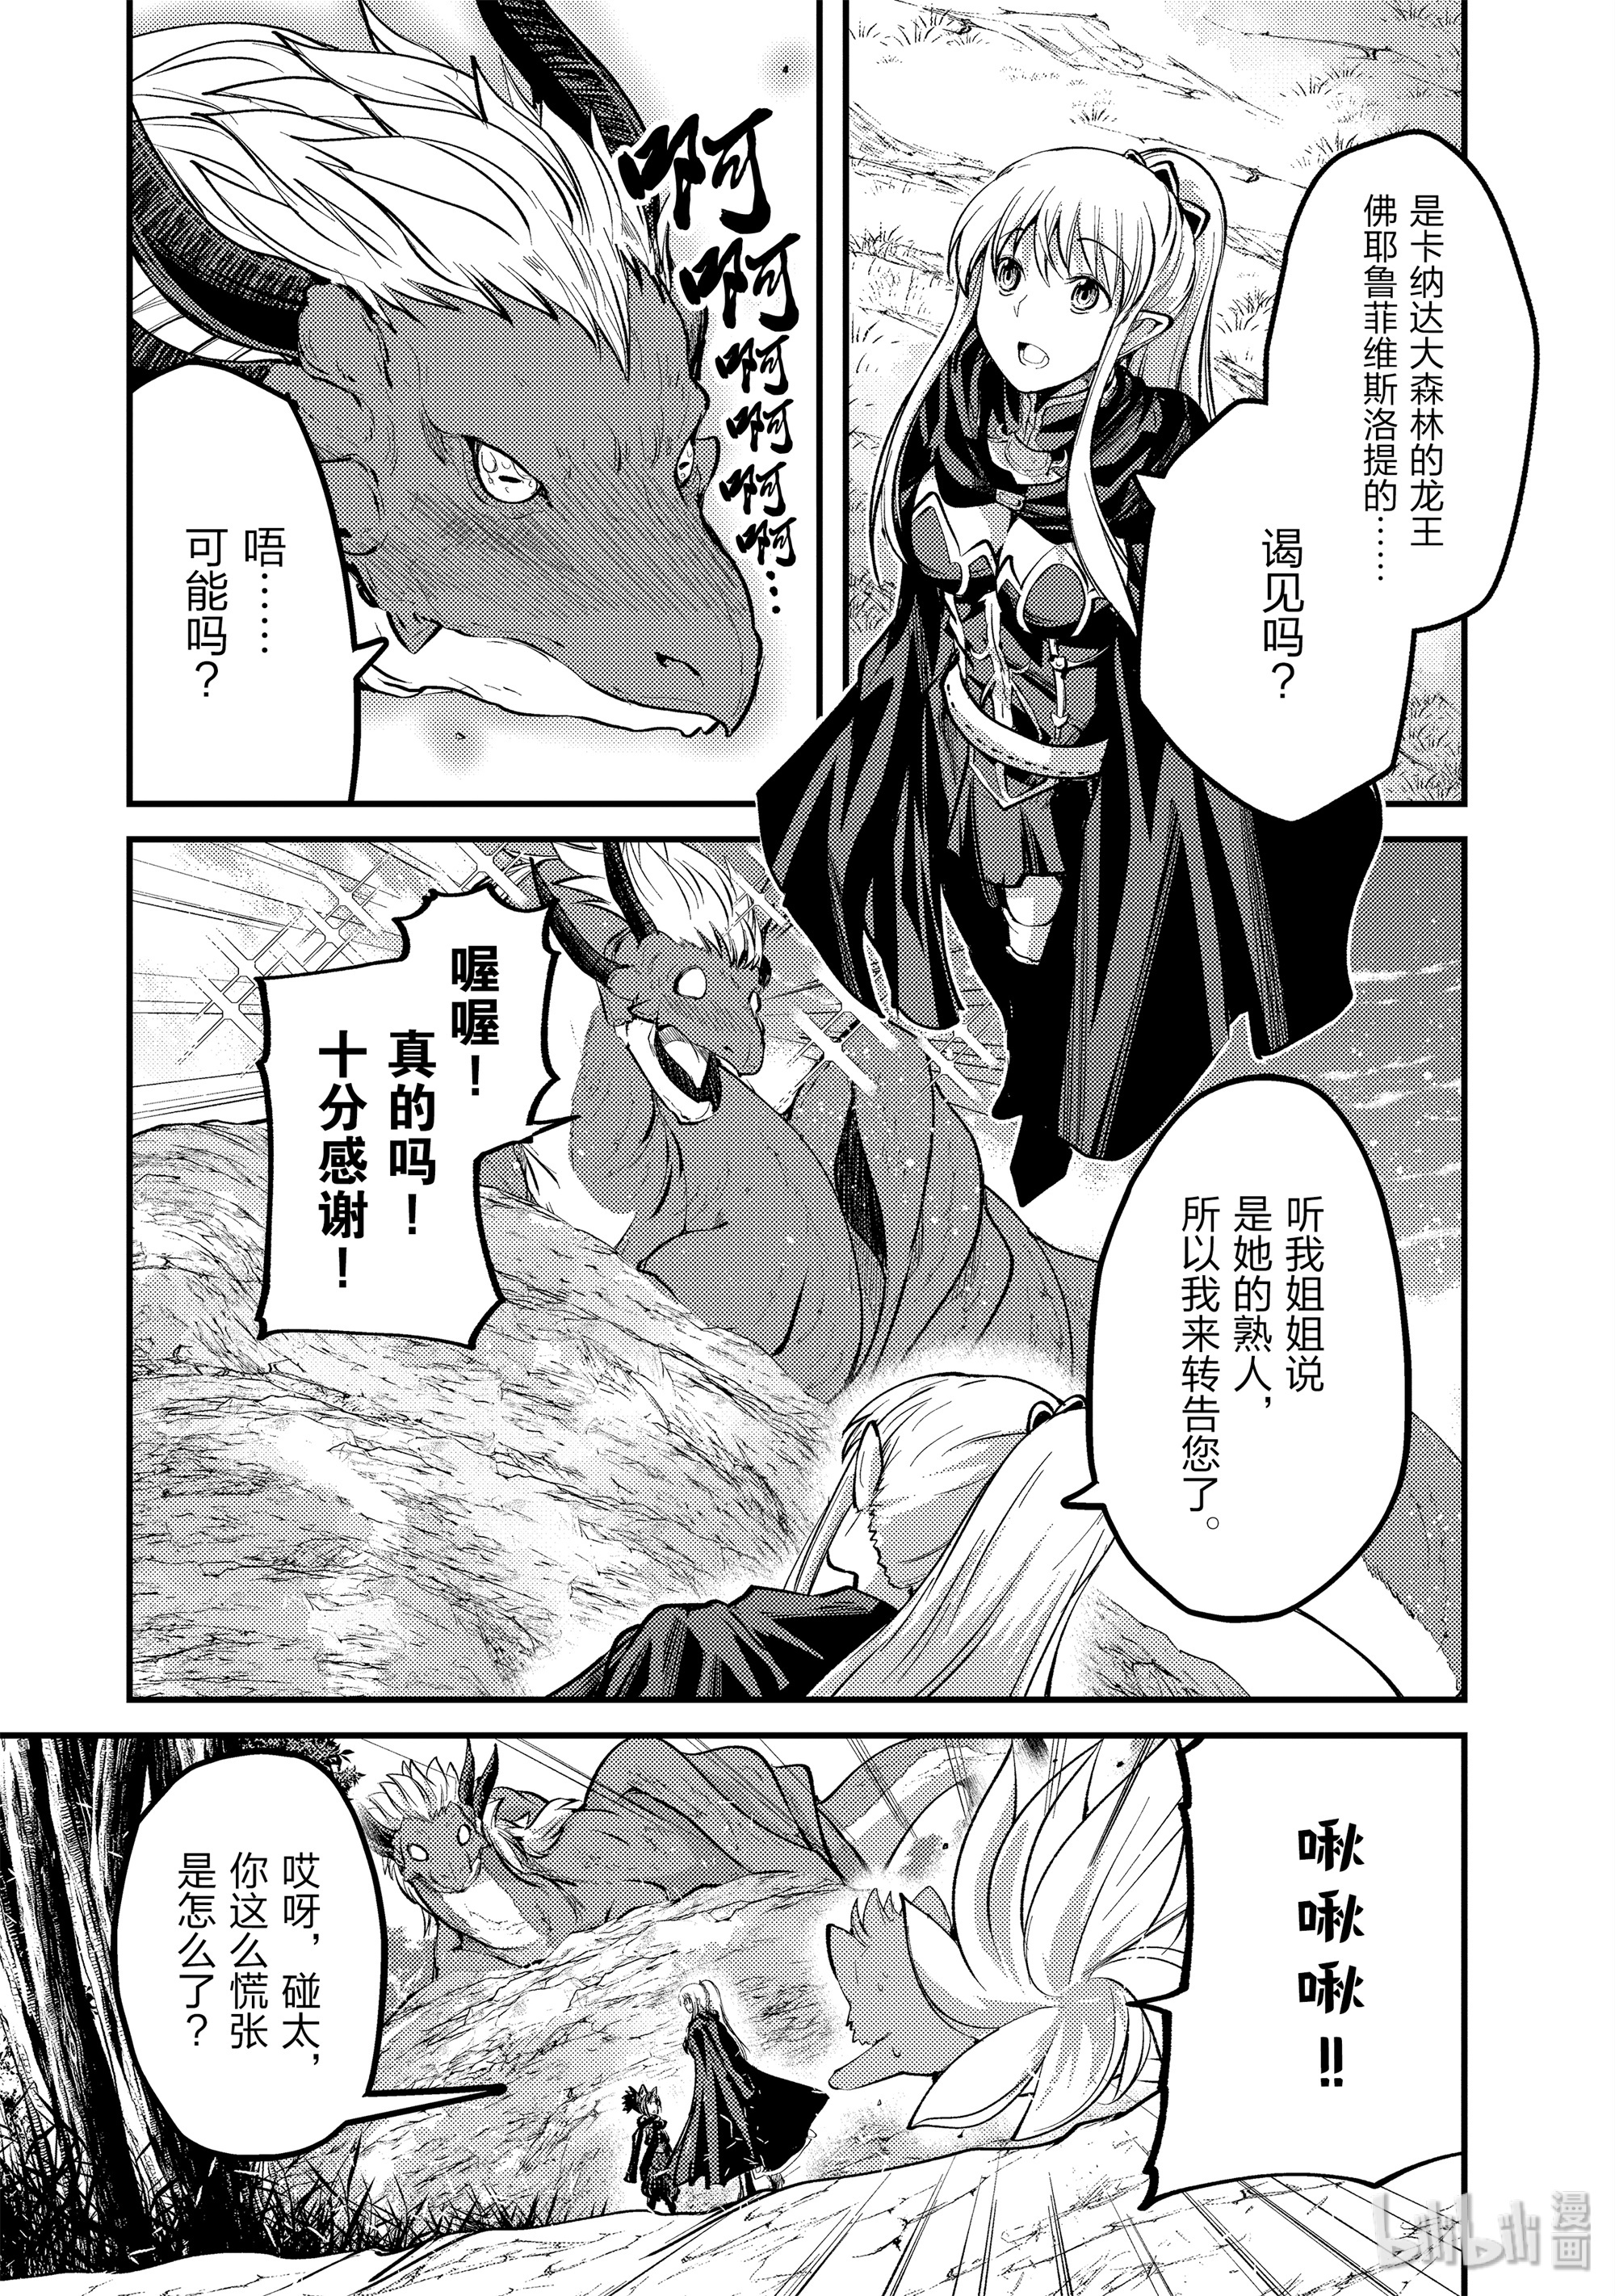 《骸骨骑士大人异世界冒险中》24 泉与诅咒Ⅱ第1页